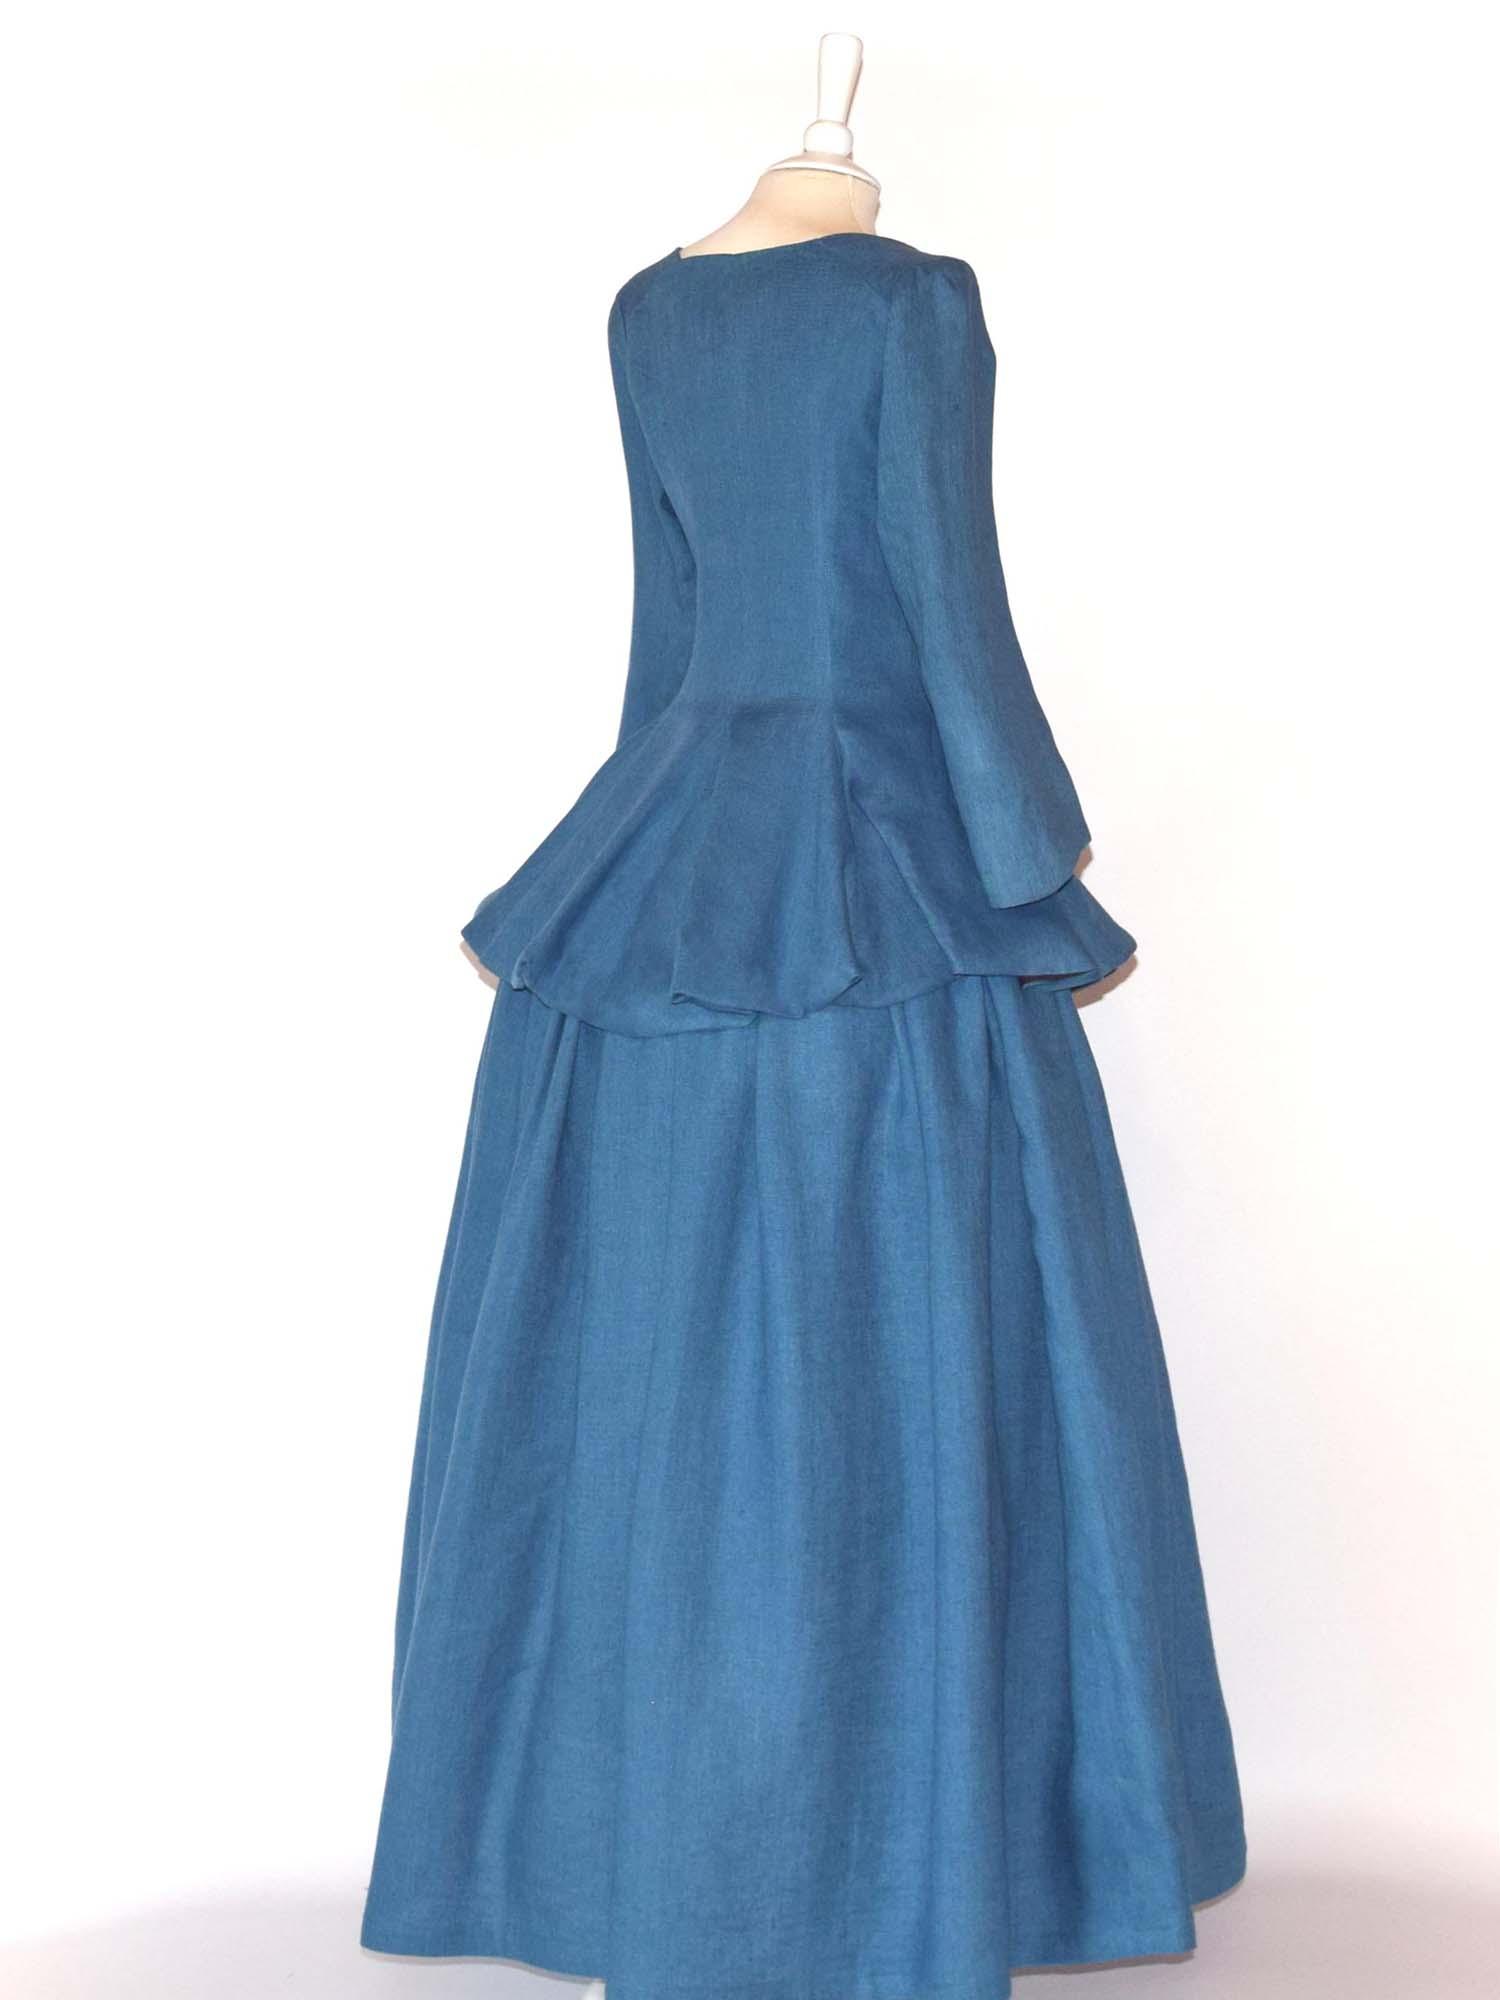 JANET, Colonial Costume in Steel Blue Linen - Atelier Serraspina